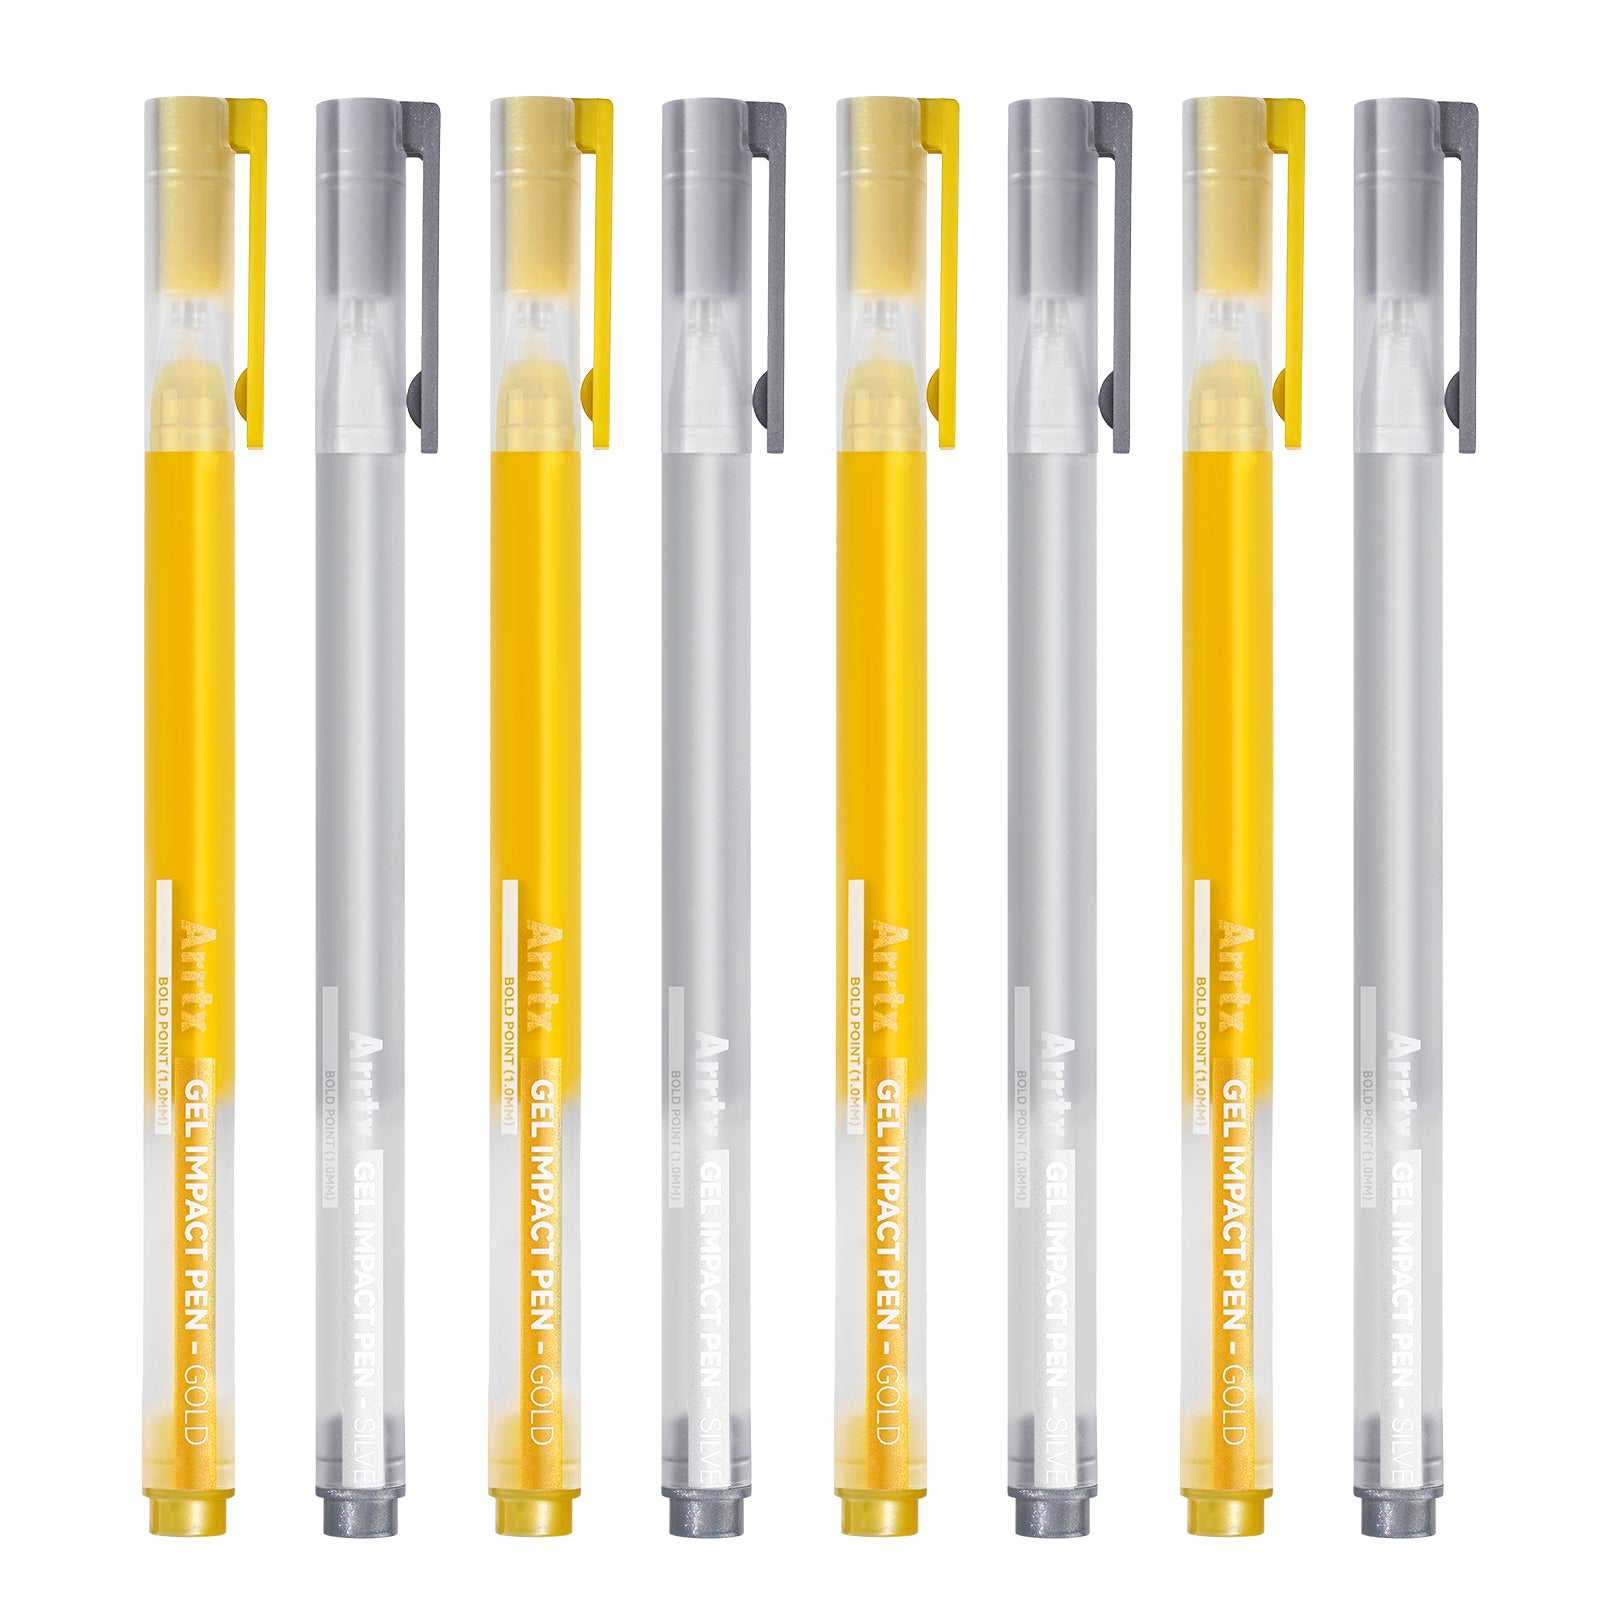 Arrtx – stylos à encre gel, couleur or et argent, paquet de 8, grande capacité, à encre blanche